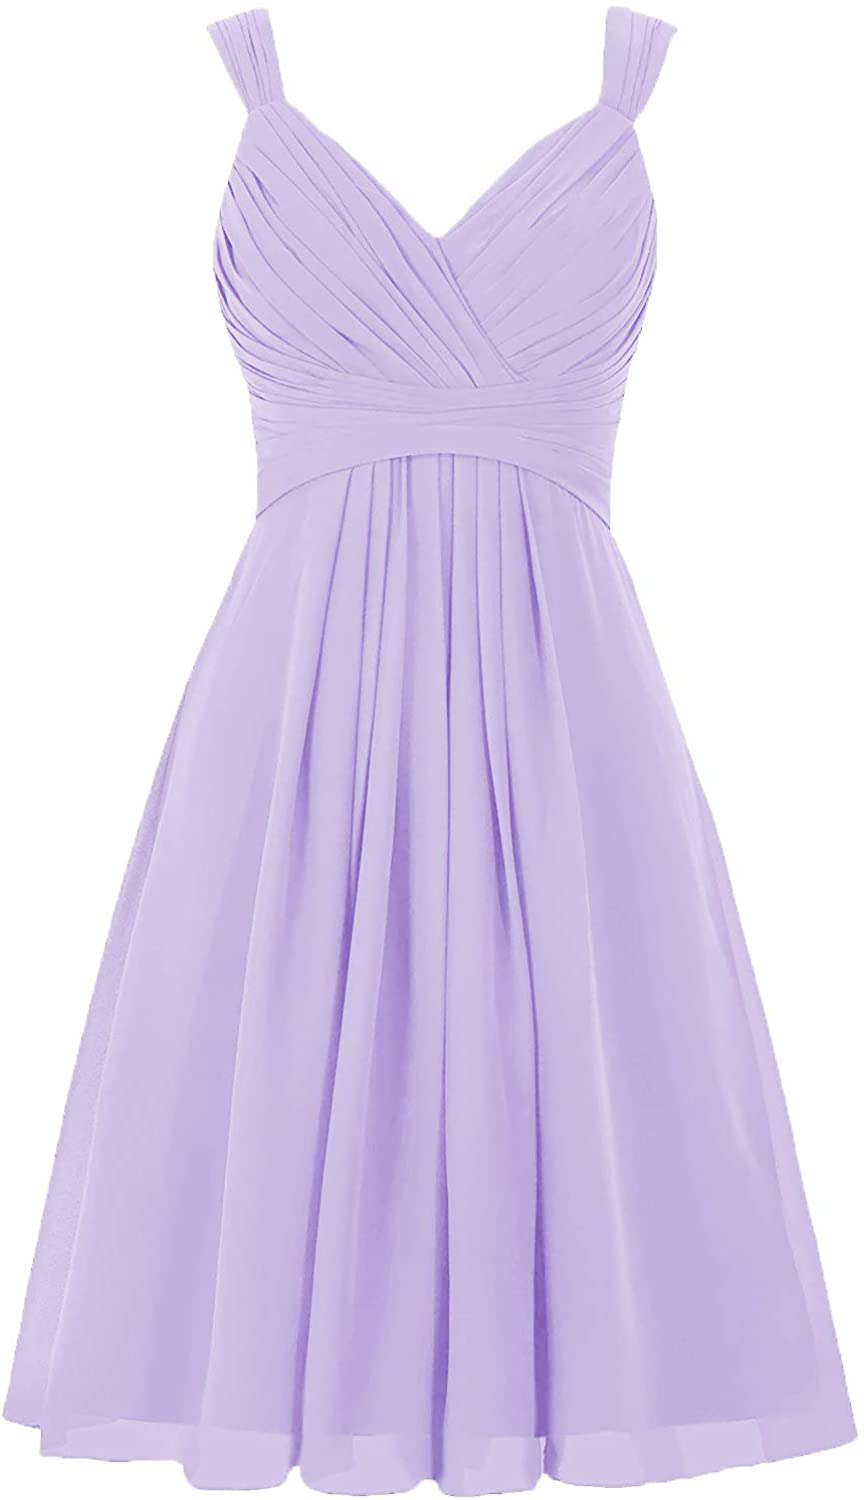 Price:$54.99 Lilac Short Wedding Bridesmaid Dresses Knee Length V-Neck ...